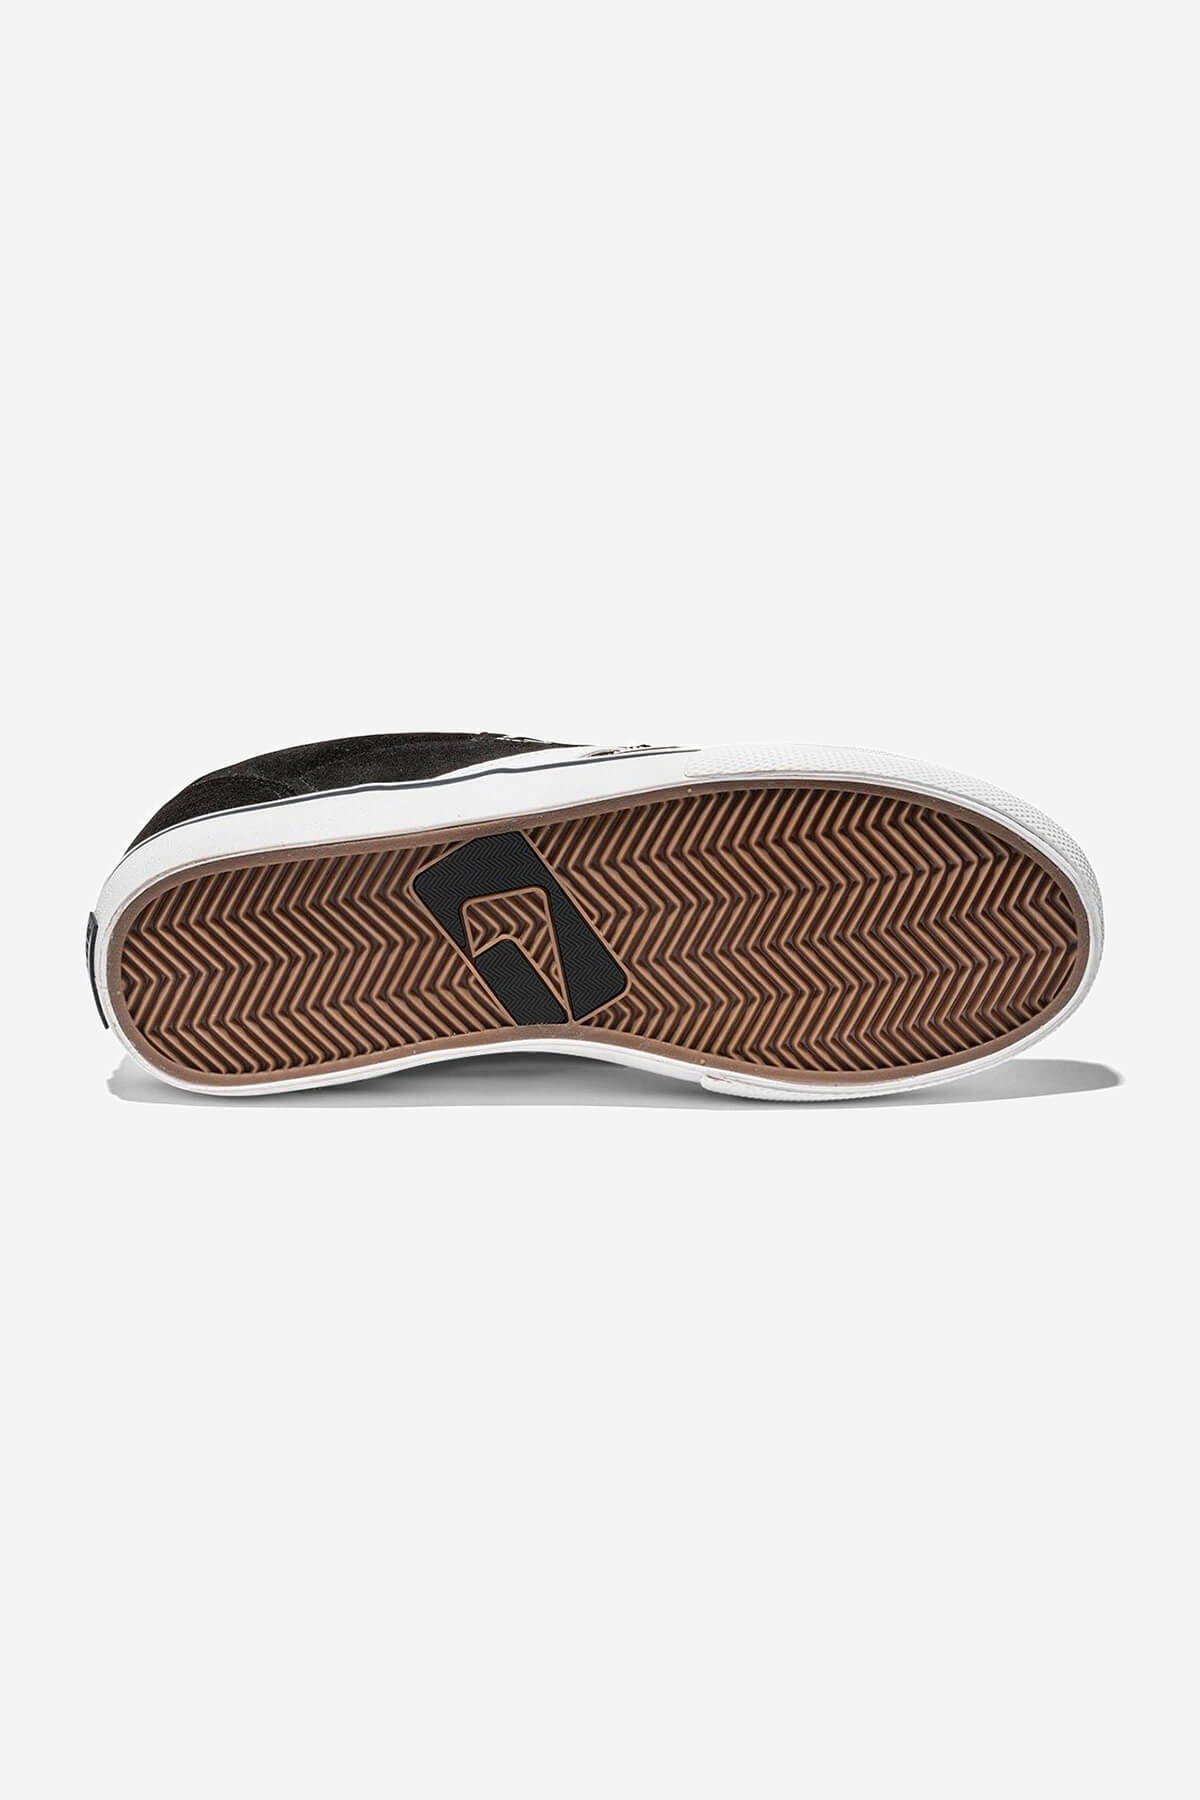 encore-2 noir white skateboard  chaussures